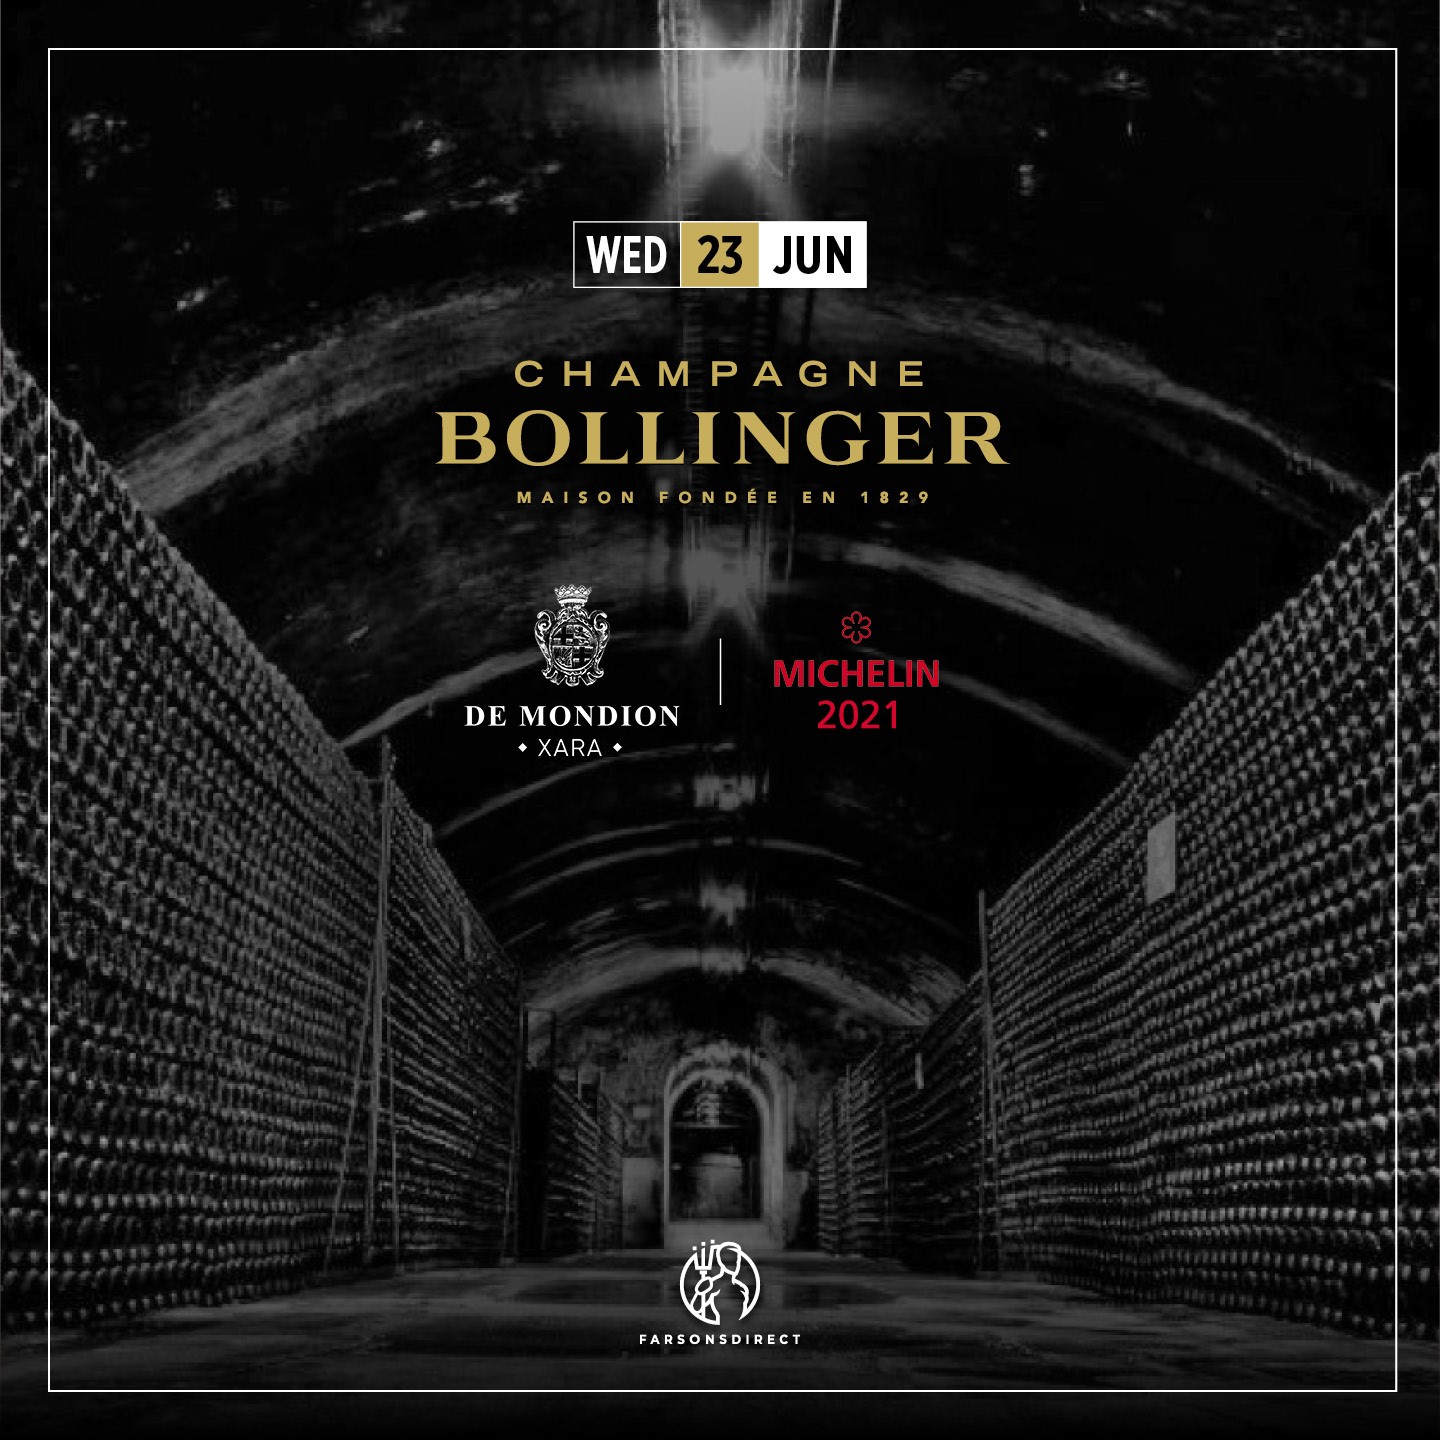 Bollinger Wine Event at the de Mondion Restaurant